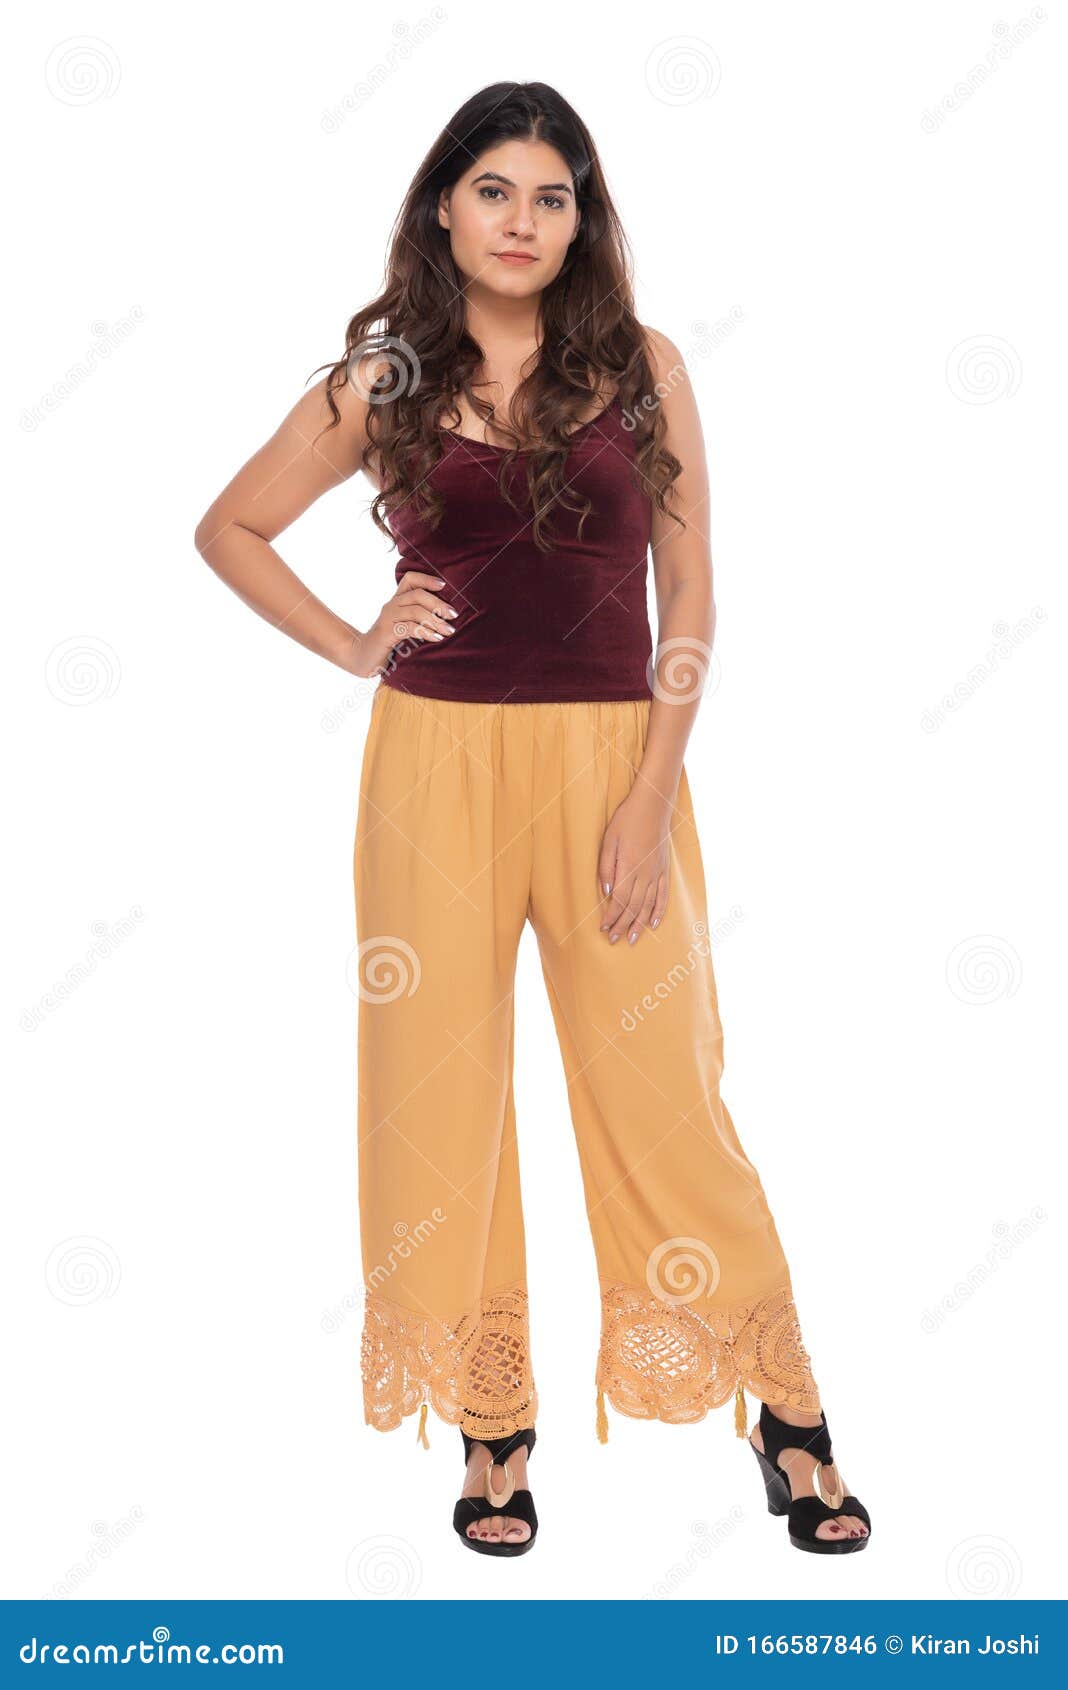 Chica India De Terciopelo Rojo Camisole Y Pantalones Sueltos Con Elegante Pose Y Expresión Foto de archivo - de sensual, hermoso: 166587846